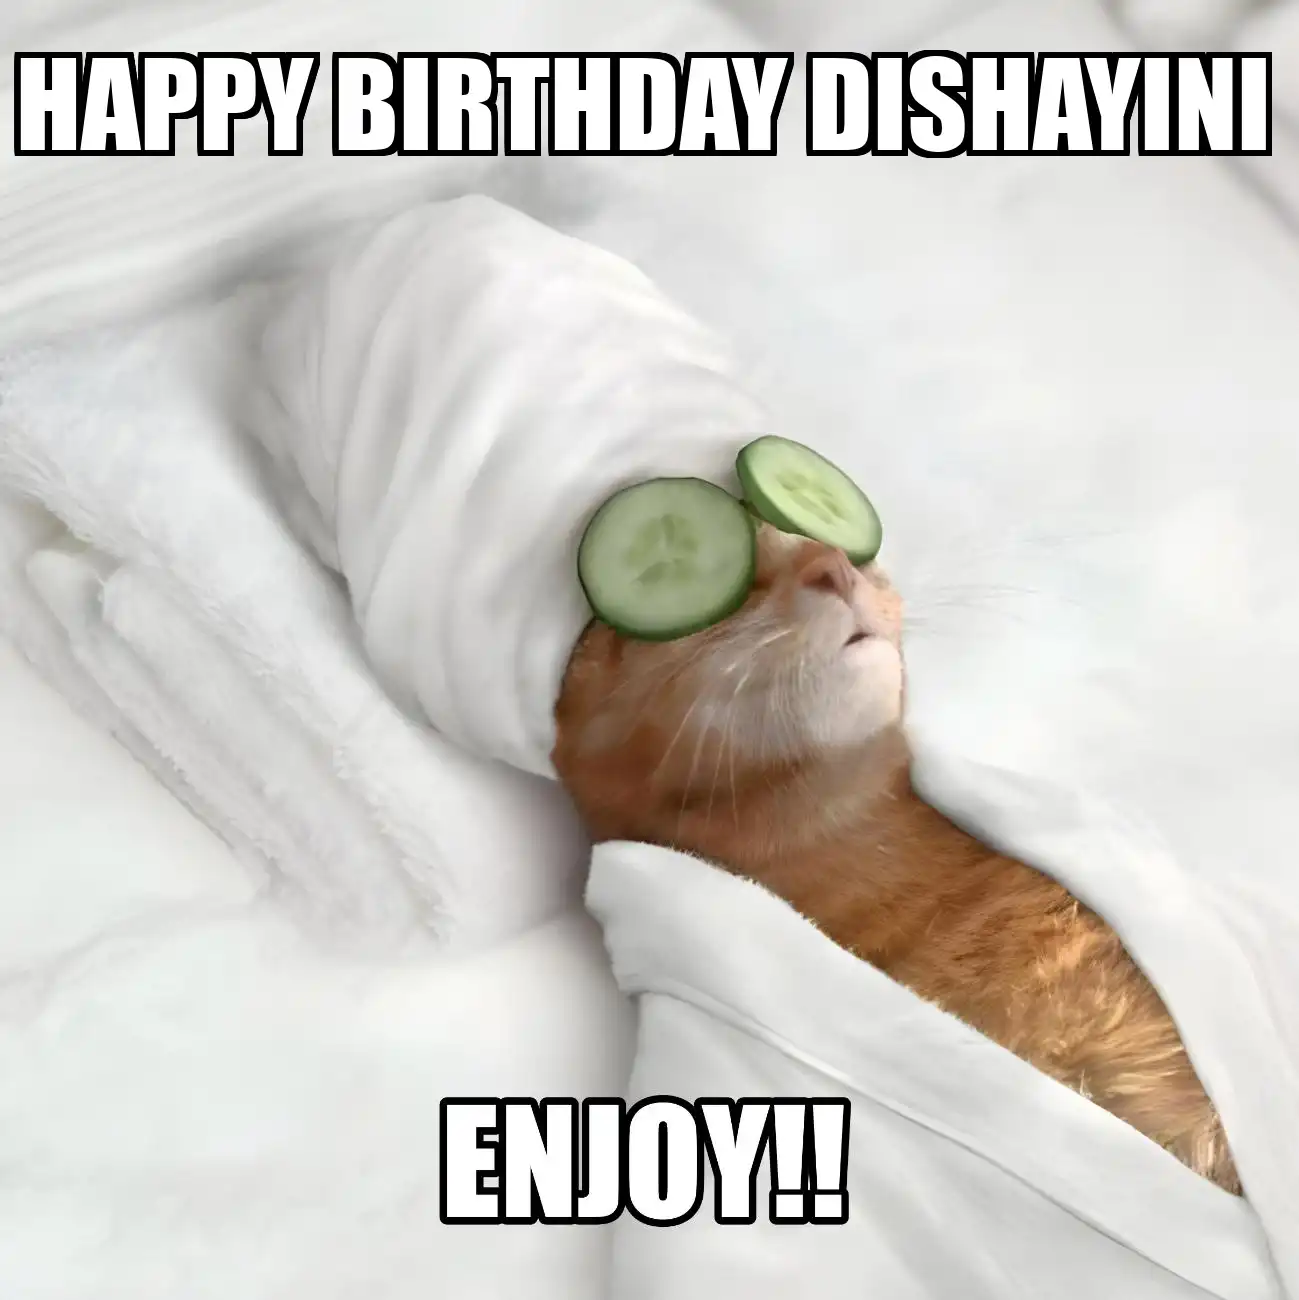 Happy Birthday Dishayini Enjoy Cat Meme